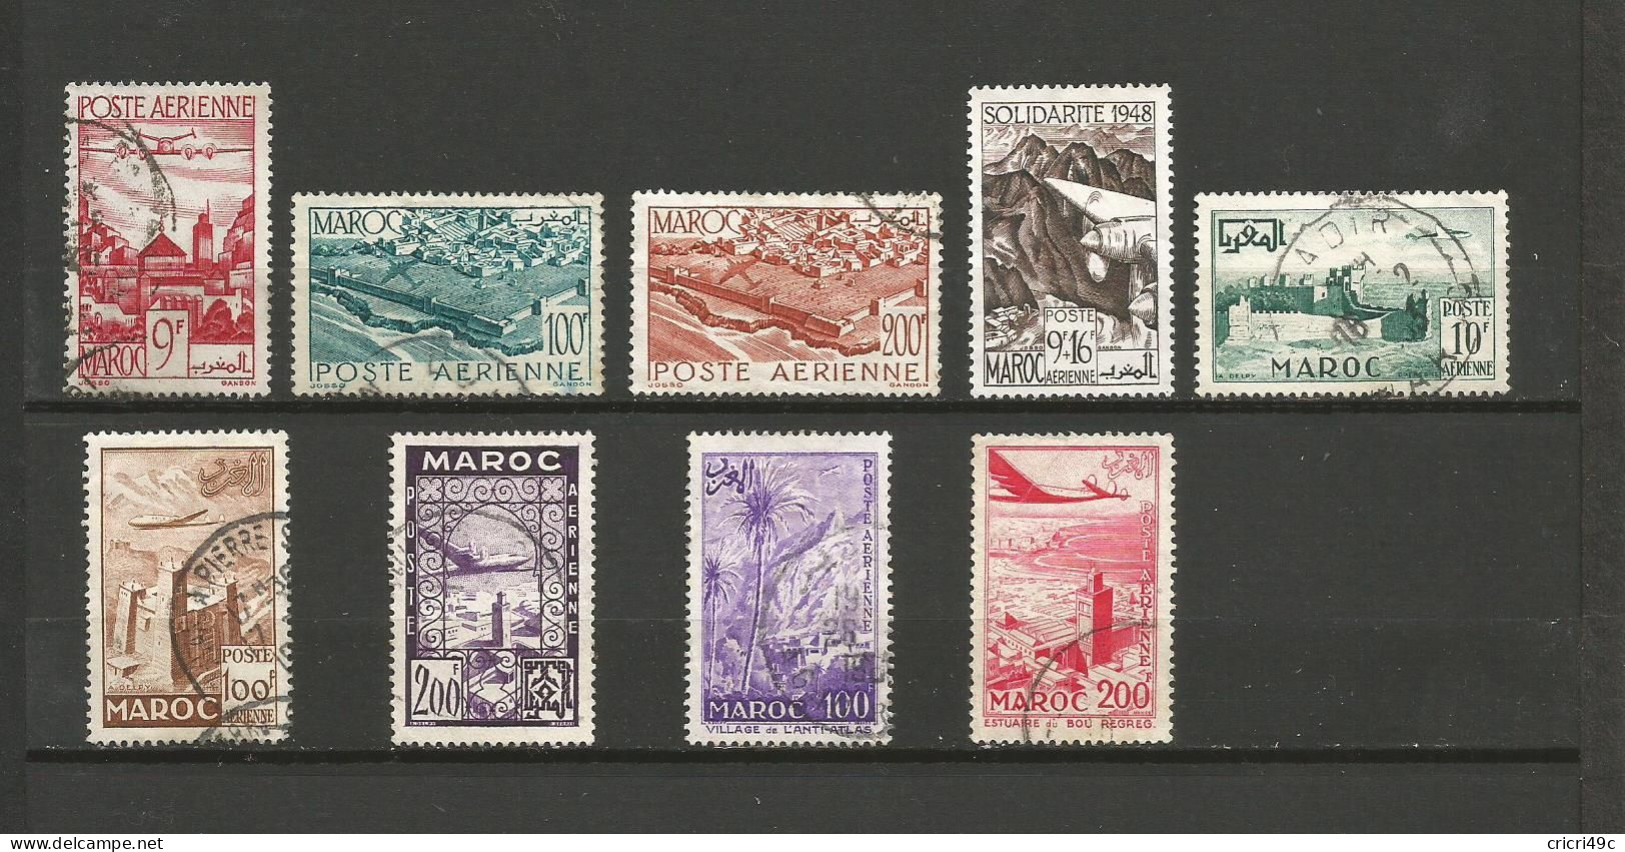 Maroc Poste Aérienne 1 Lot De 9 Timbres Oblitérés De 1947 à 1955  (A9) - Collections (without Album)